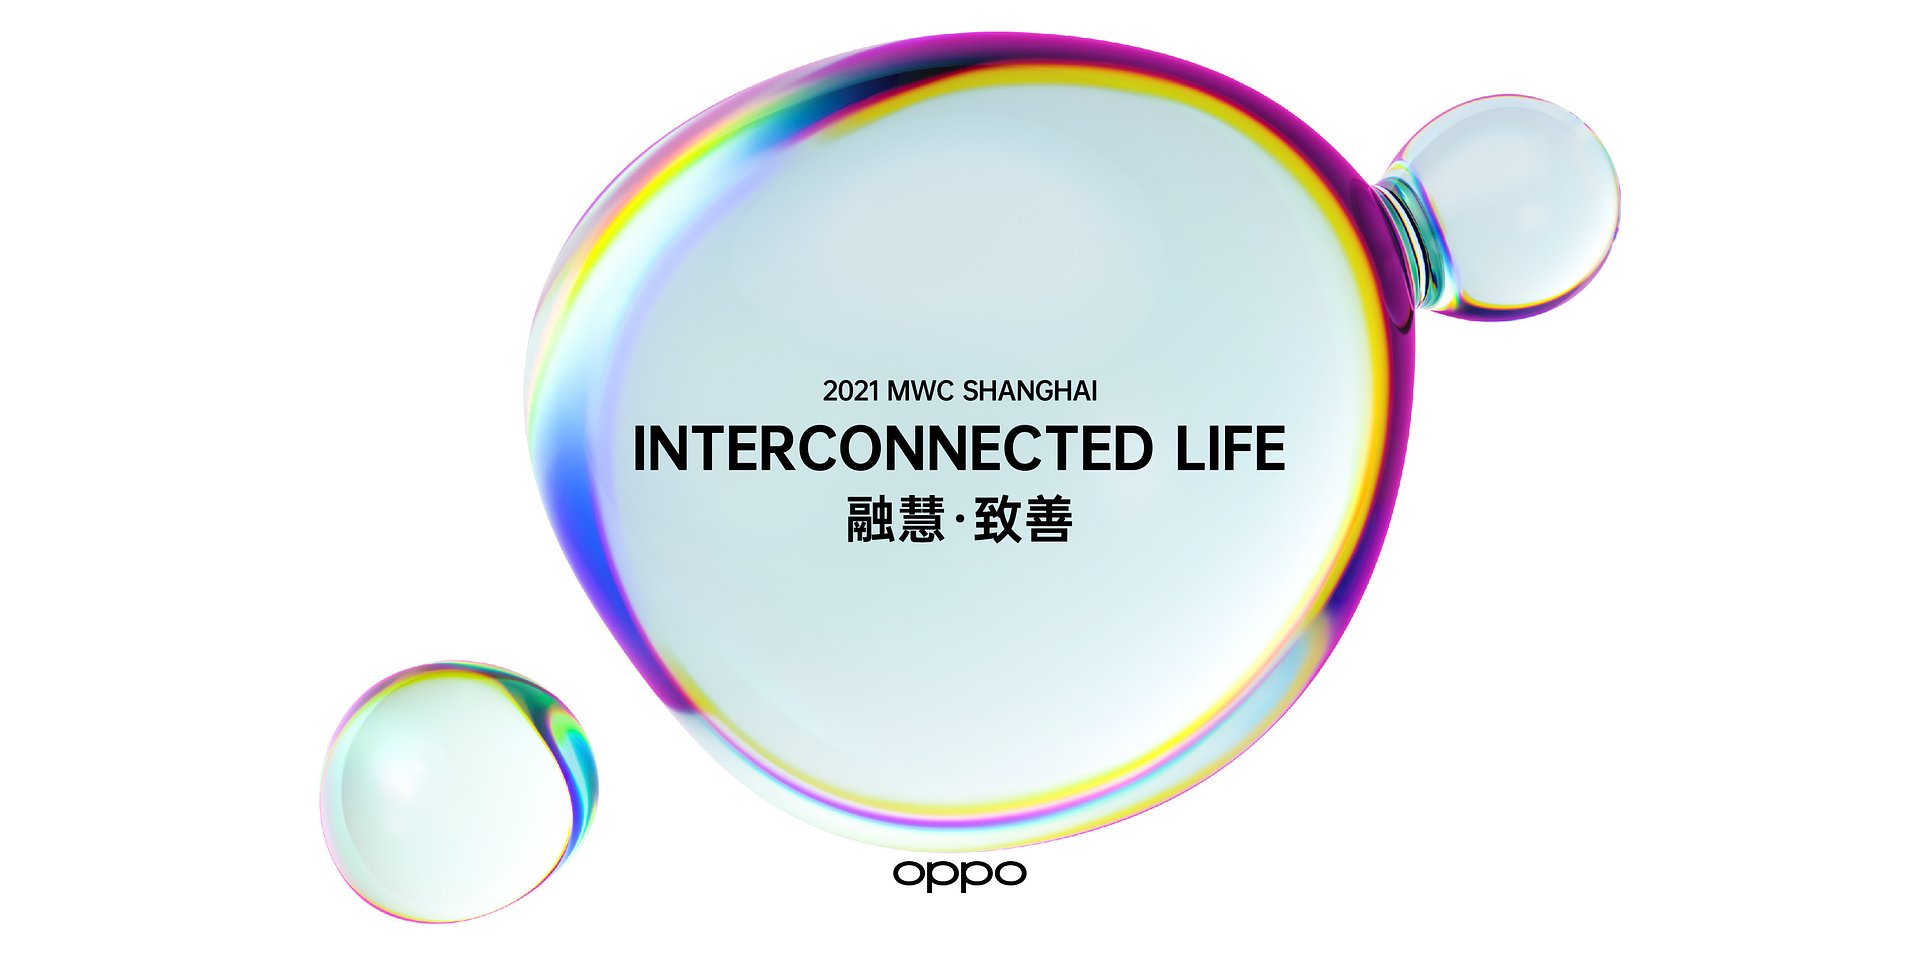 OPPO na Mobile World Congress Shanghai 2021 - przełomowe technologie i partnerstwa